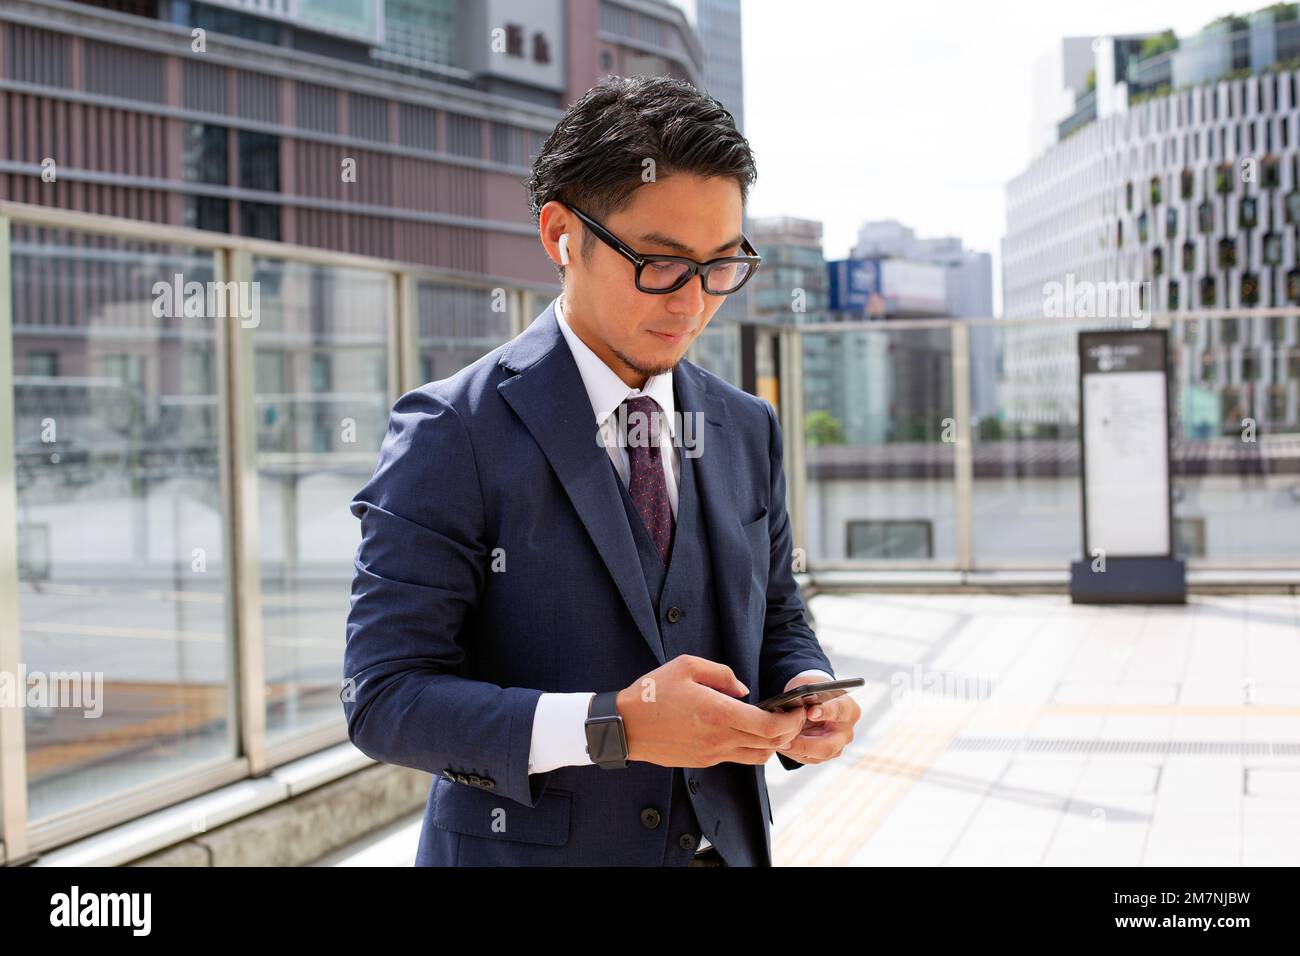 Un joven hombre de negocios en la ciudad, en movimiento, un hombre al aire libre con un traje mirando su teléfono móvil. Foto de stock